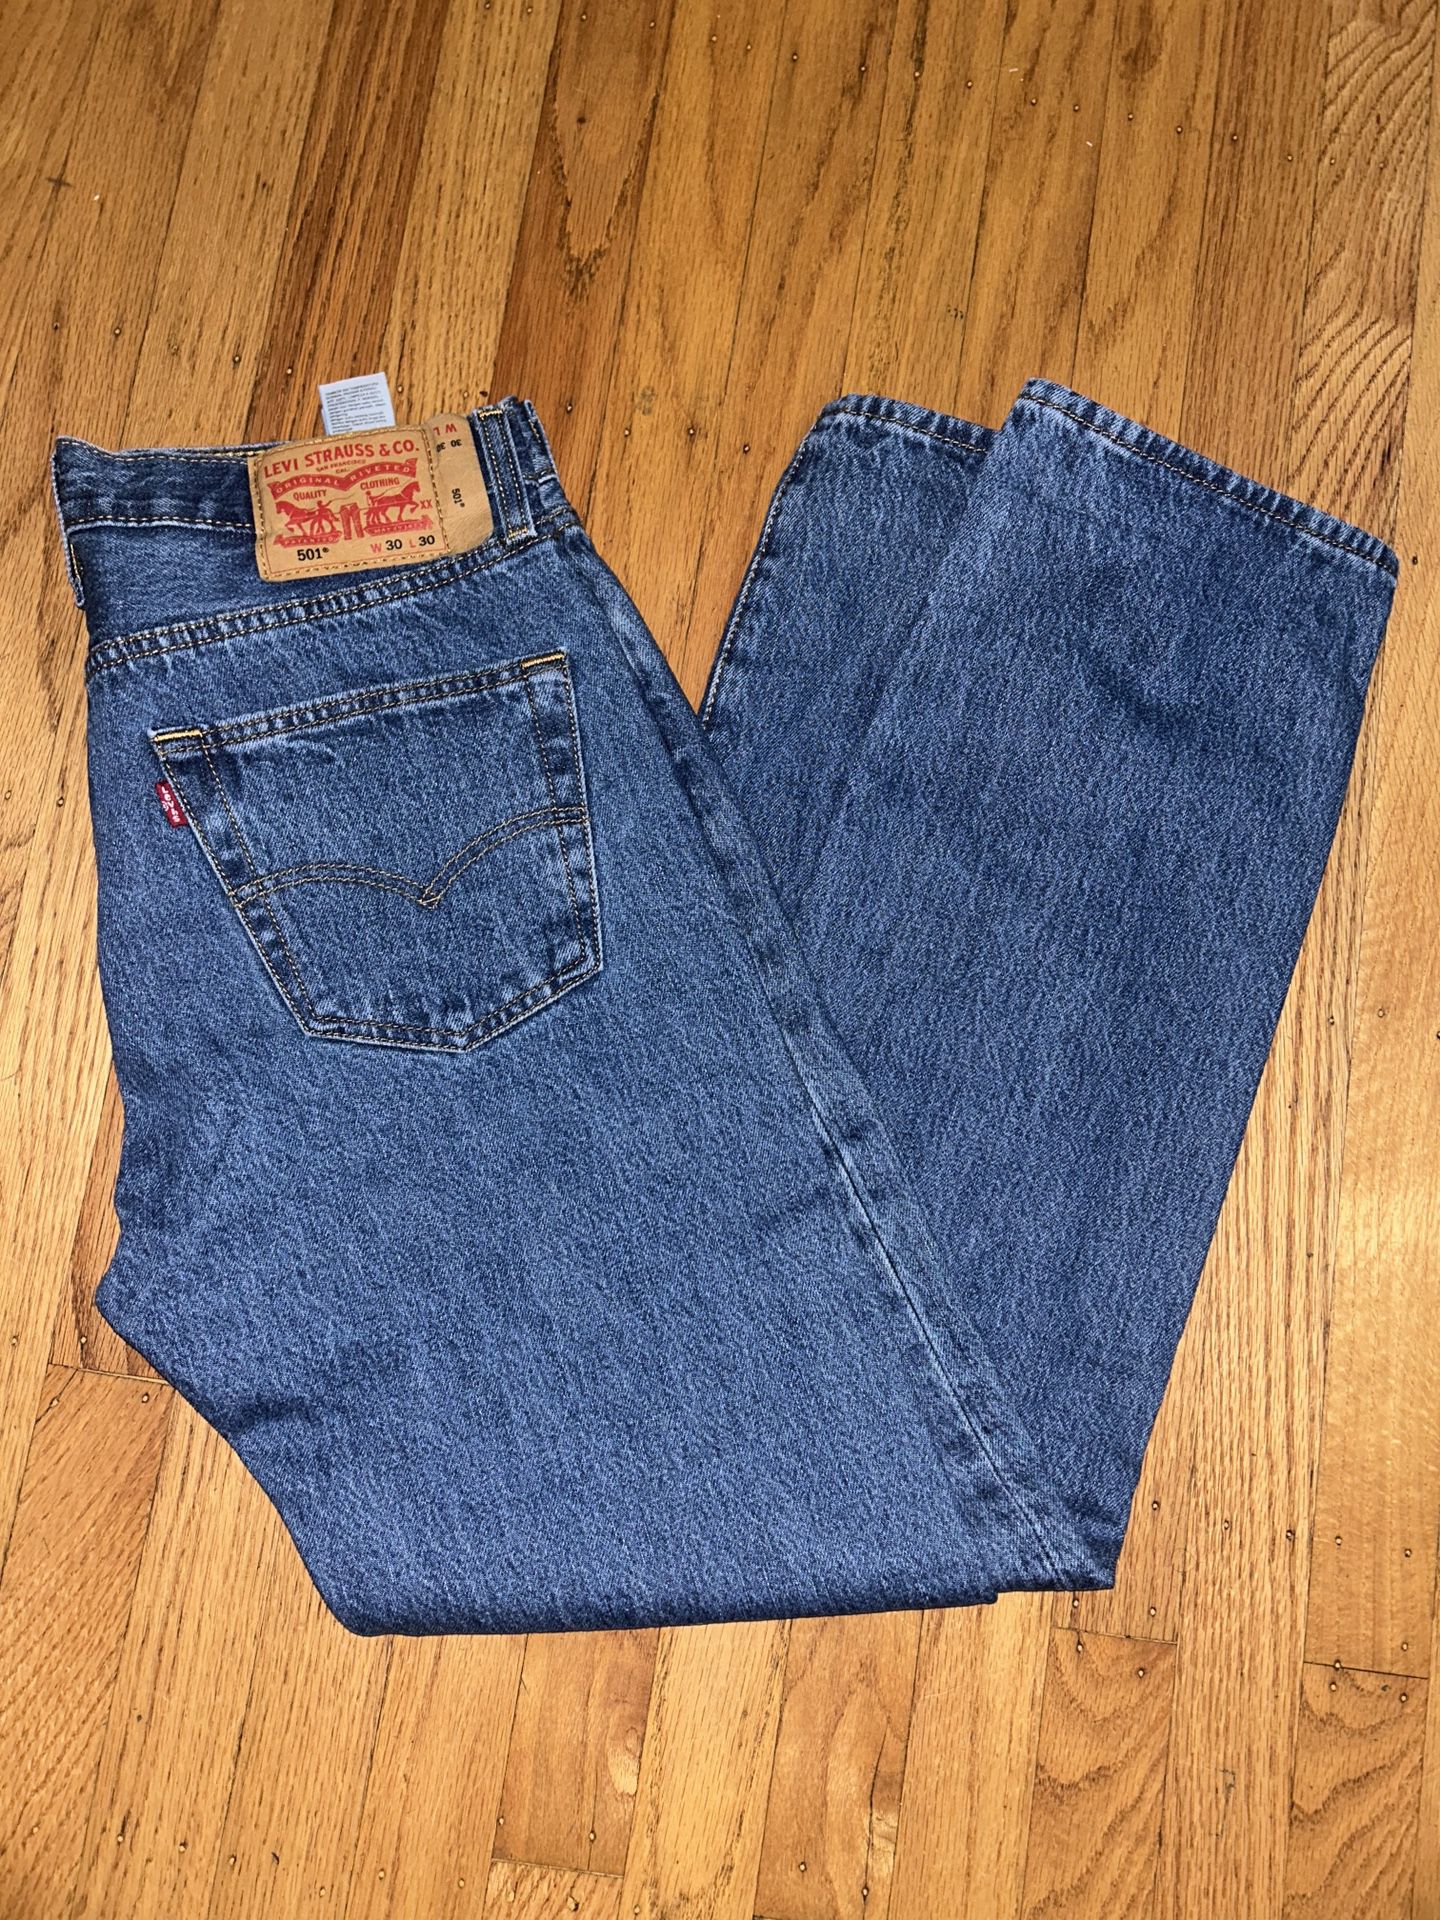 Levi’s 501 Jeans Size 30x30